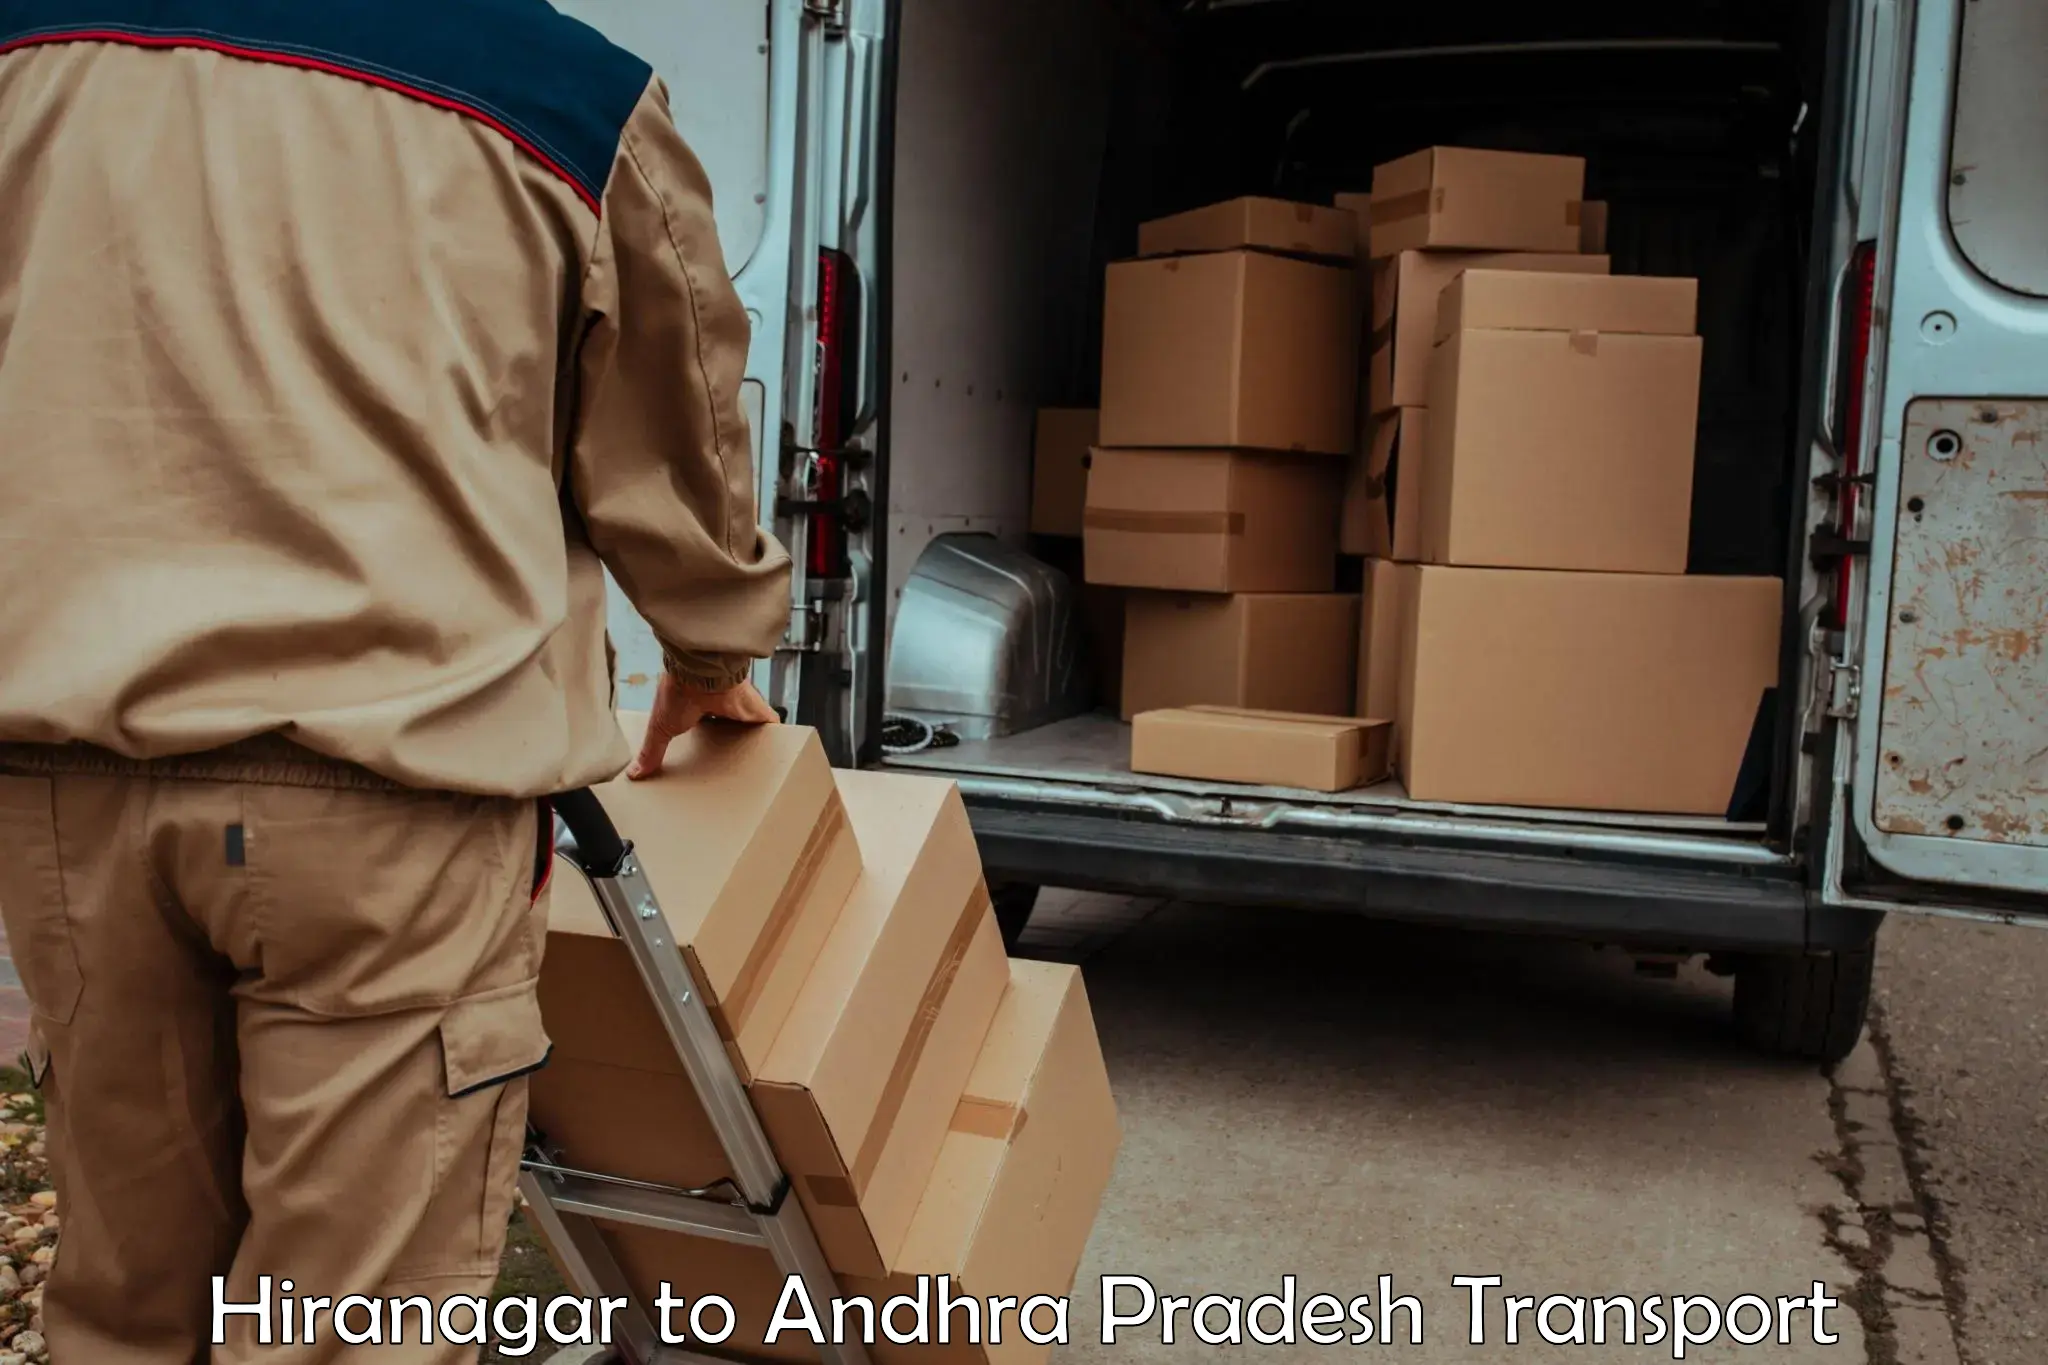 Goods delivery service Hiranagar to Gopalapuram